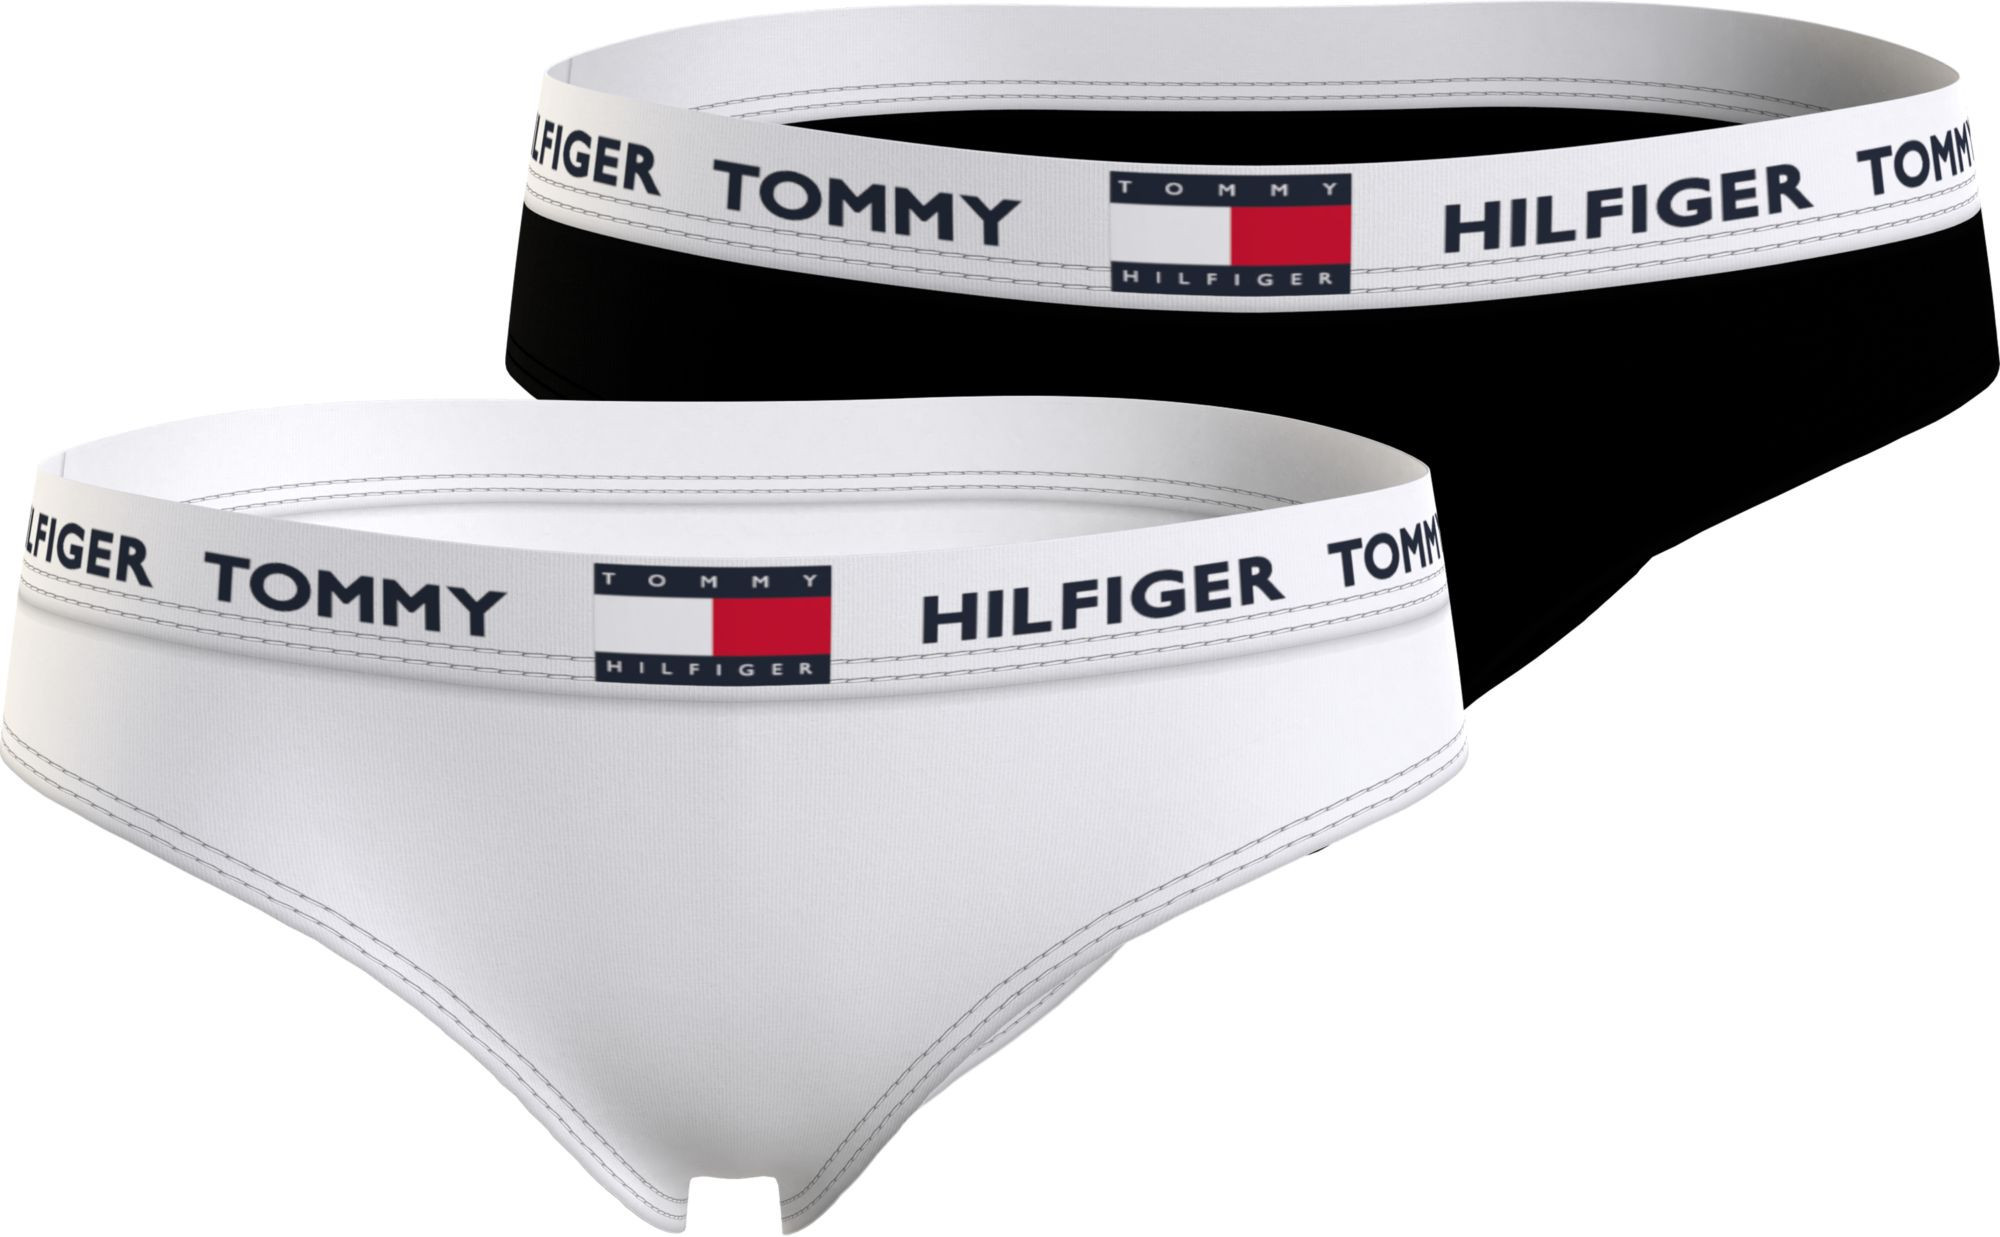 Dívčí kalhotky 2Pack BIKINI UG0UG00348 0WS černé/bílé - Tommy Hilfiger 12-14